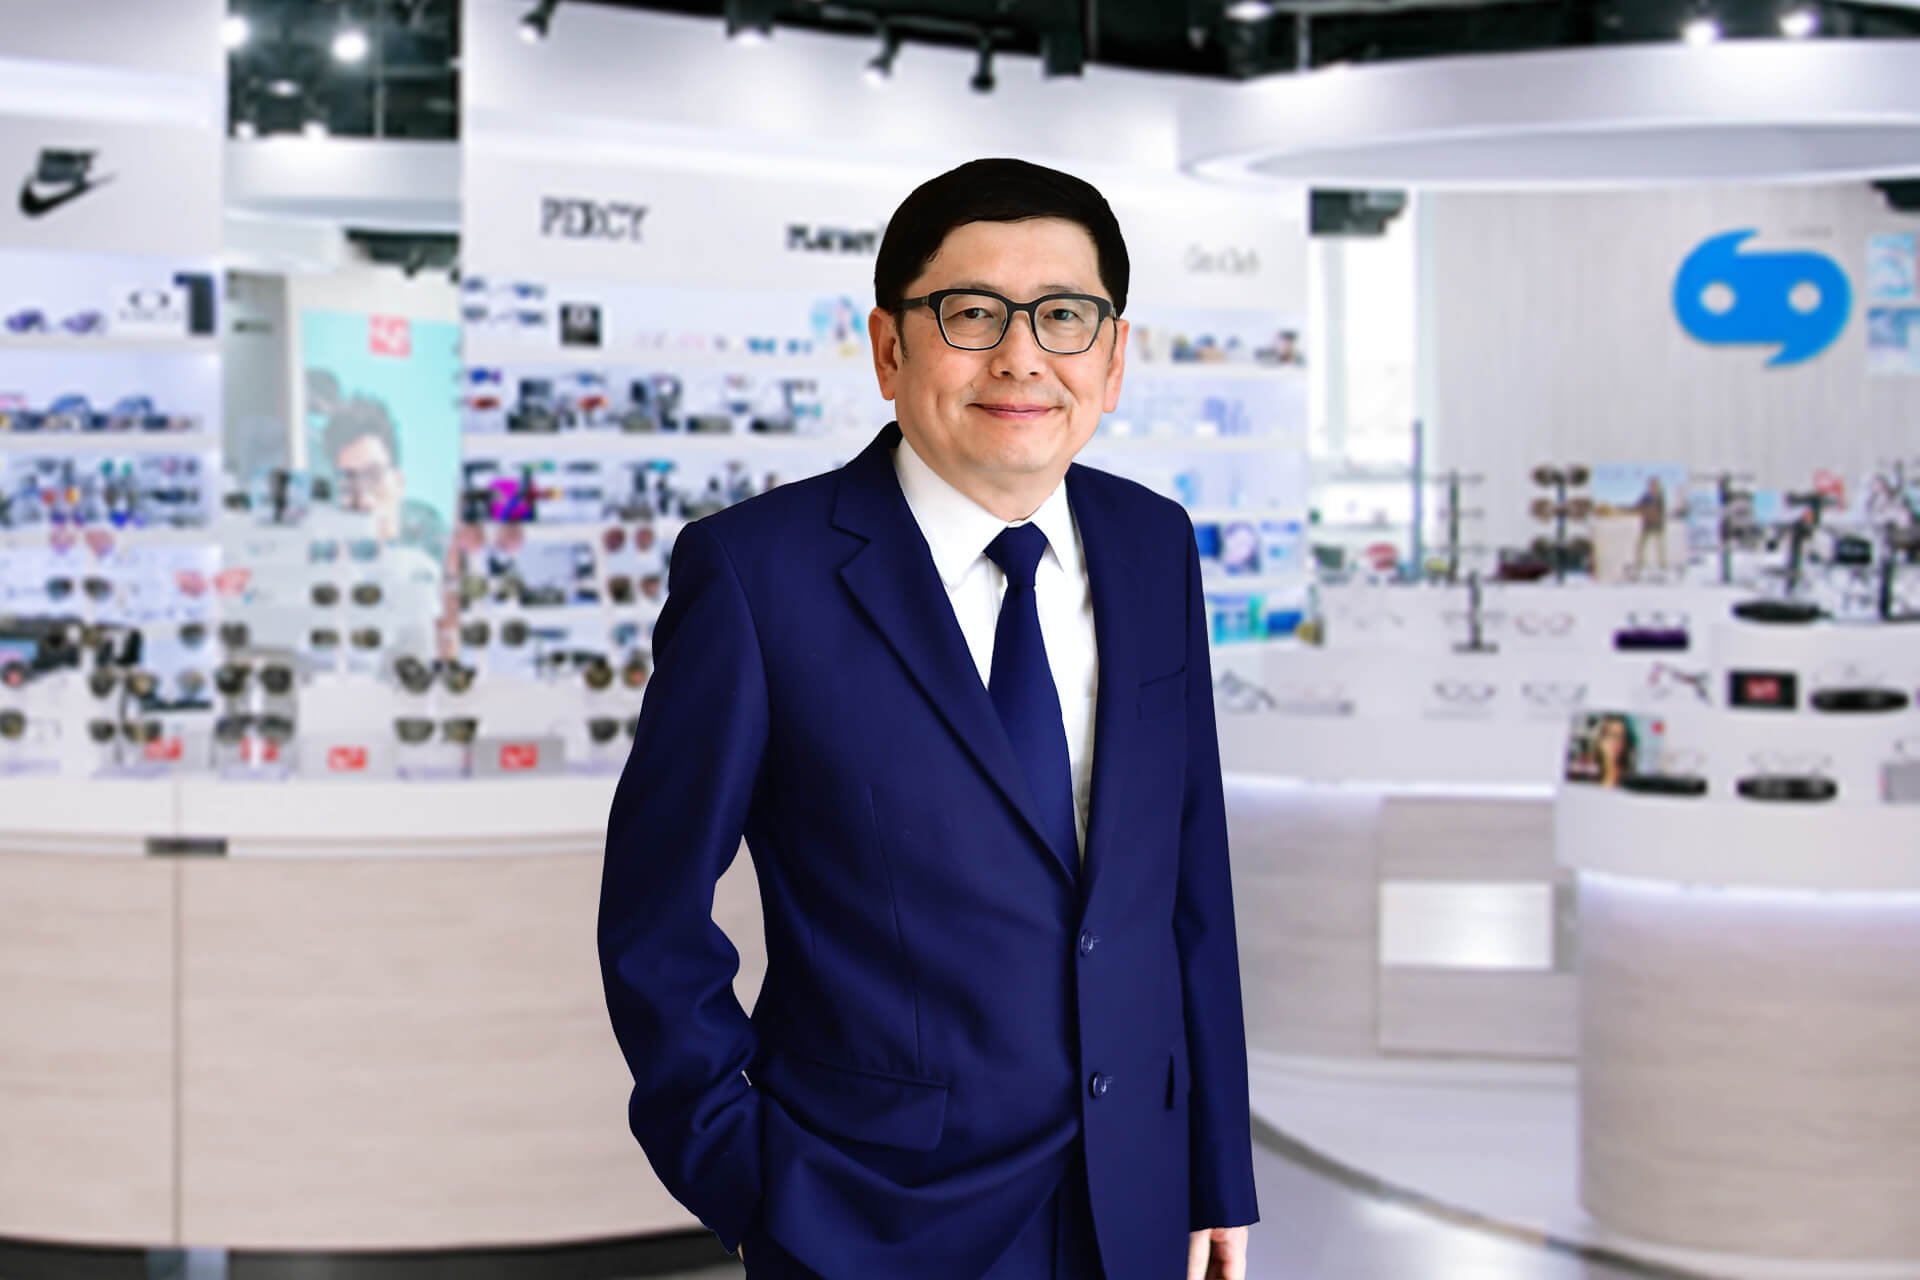 แว่นท็อปเจริญ จากรถเร่สู่ตลาดหลักทรัพย์ฯ มุ่งสู่การเป็นผู้นำตลาดแว่นตาอาเซียน